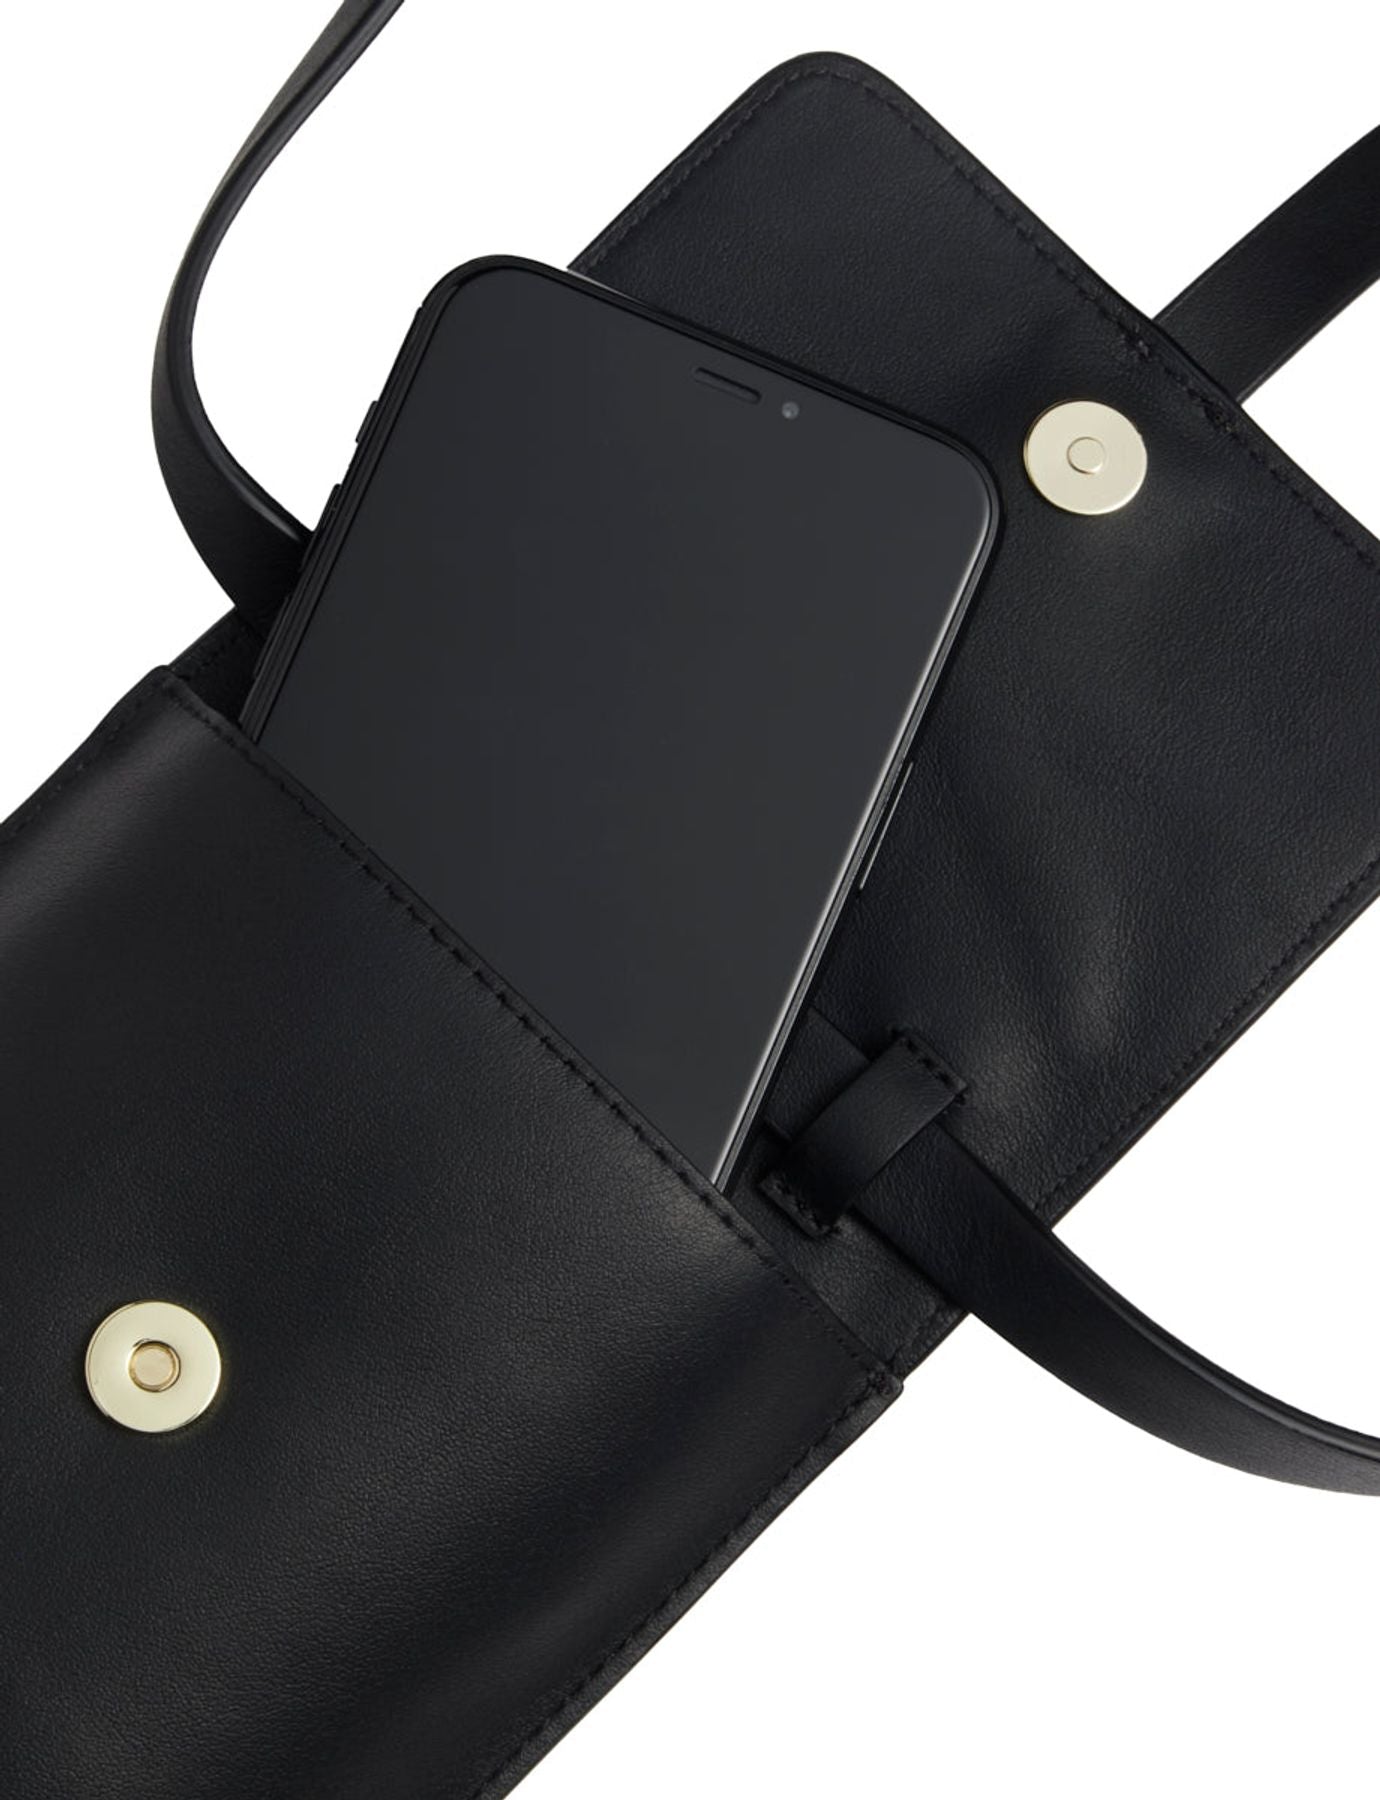 smartphone-bag-leonore-black